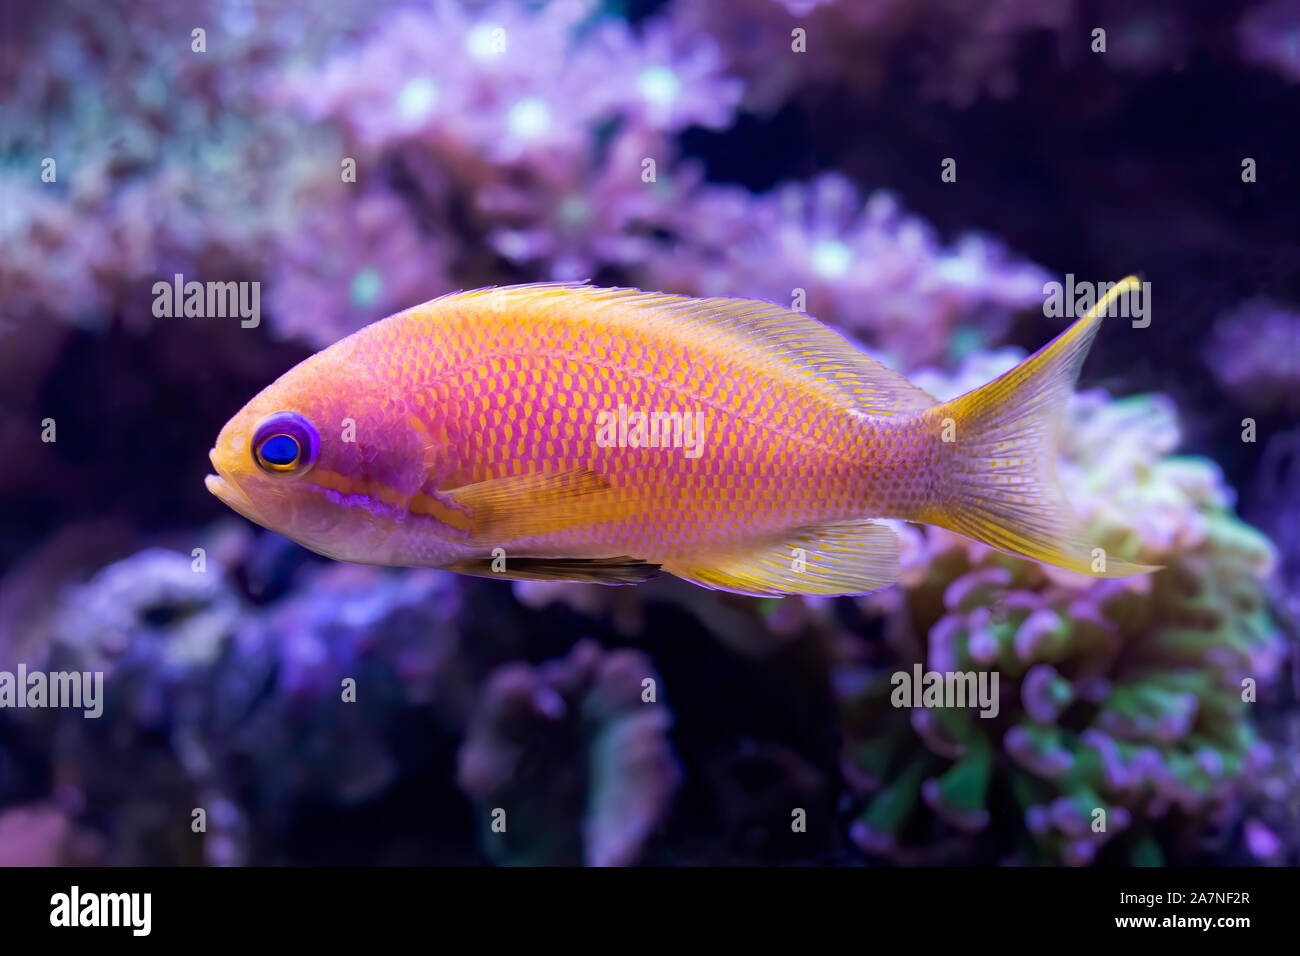 Close up dettaglio del blue eyed anthias pesci tropicali in acquario con coralli. Il pesce è rosa chiaro e giallo. Foto Stock